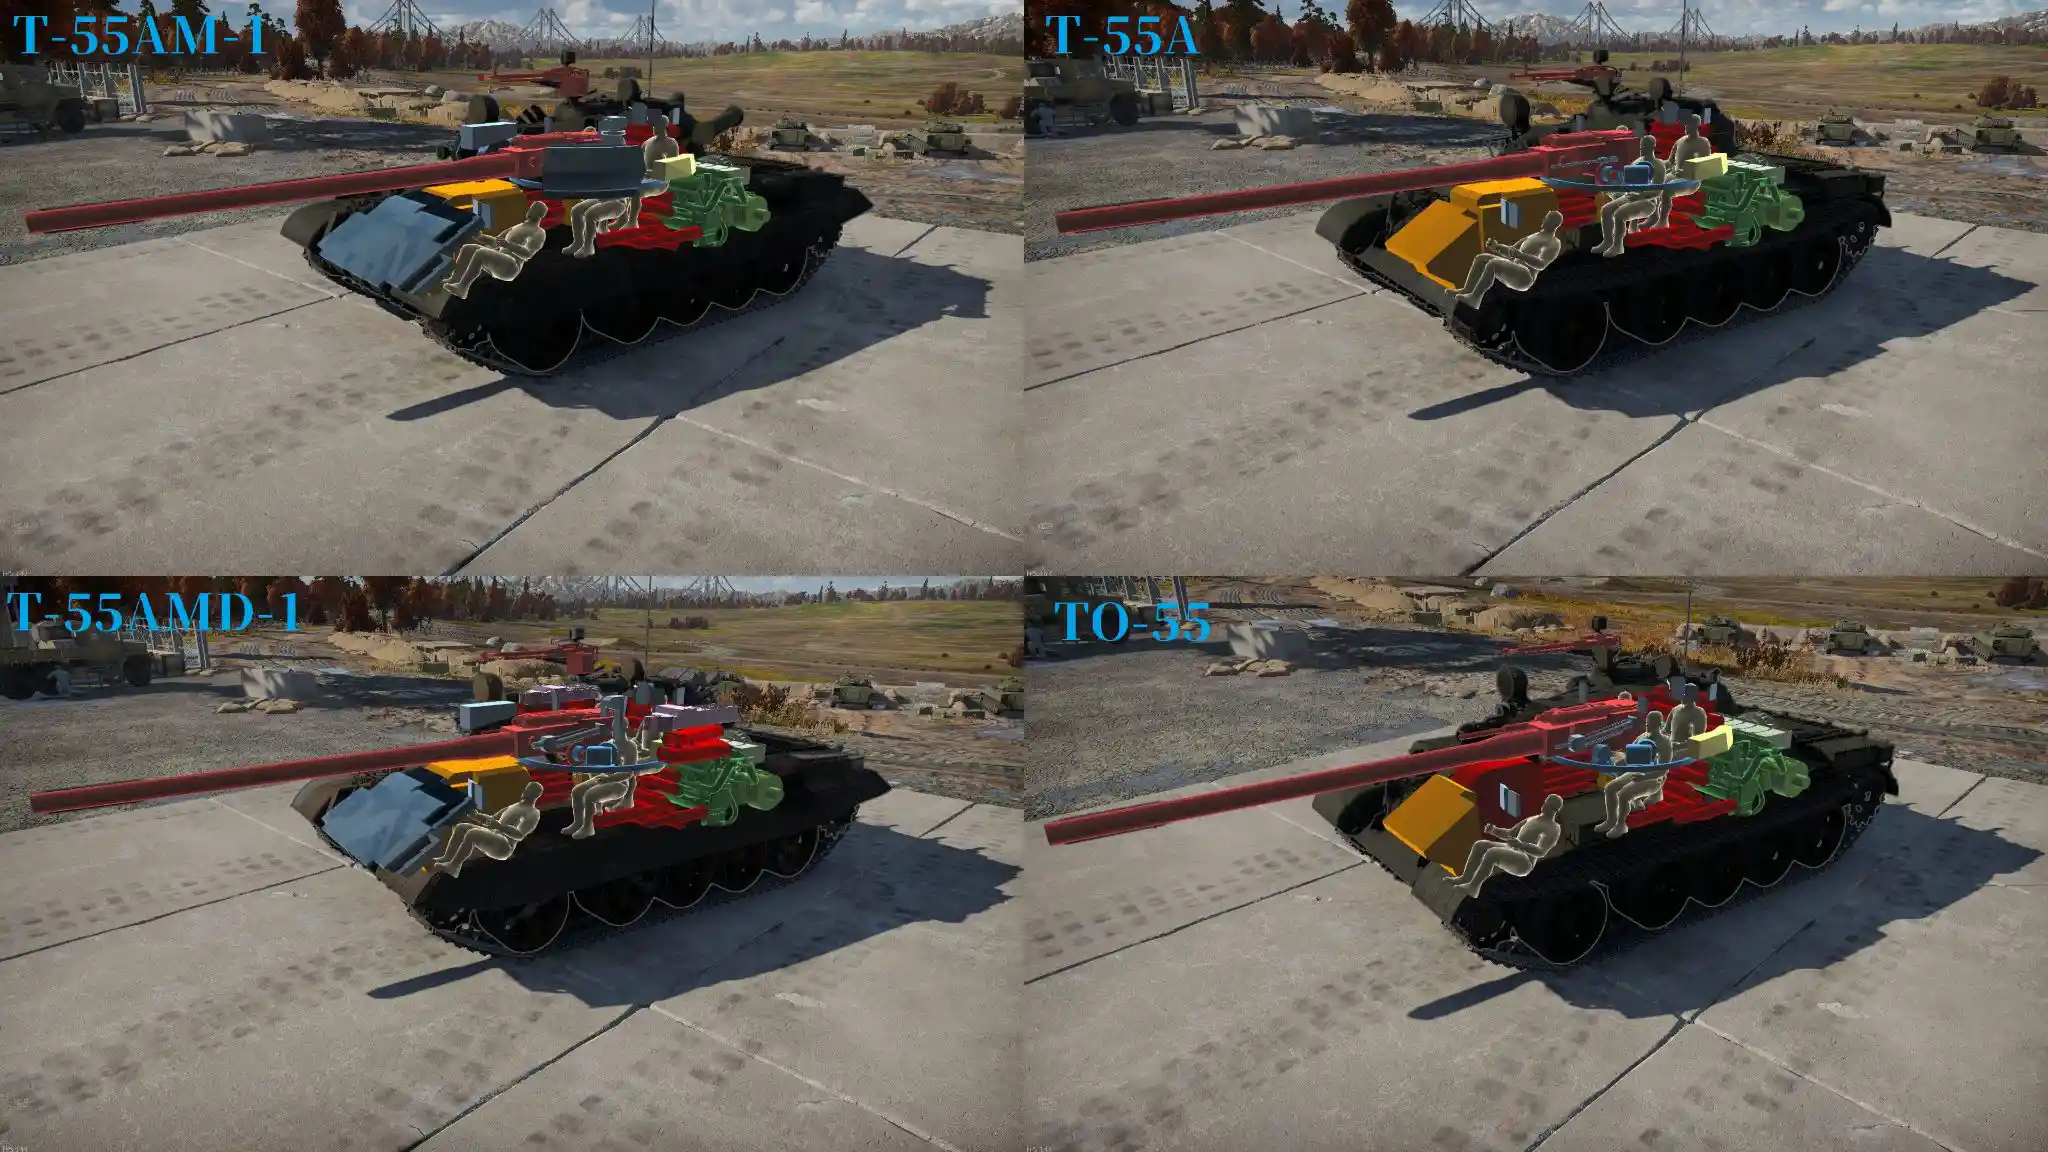 装甲比較画像。左上から、A-55AM-1、T-55A、T-55AMD-1、TO-55の順番。